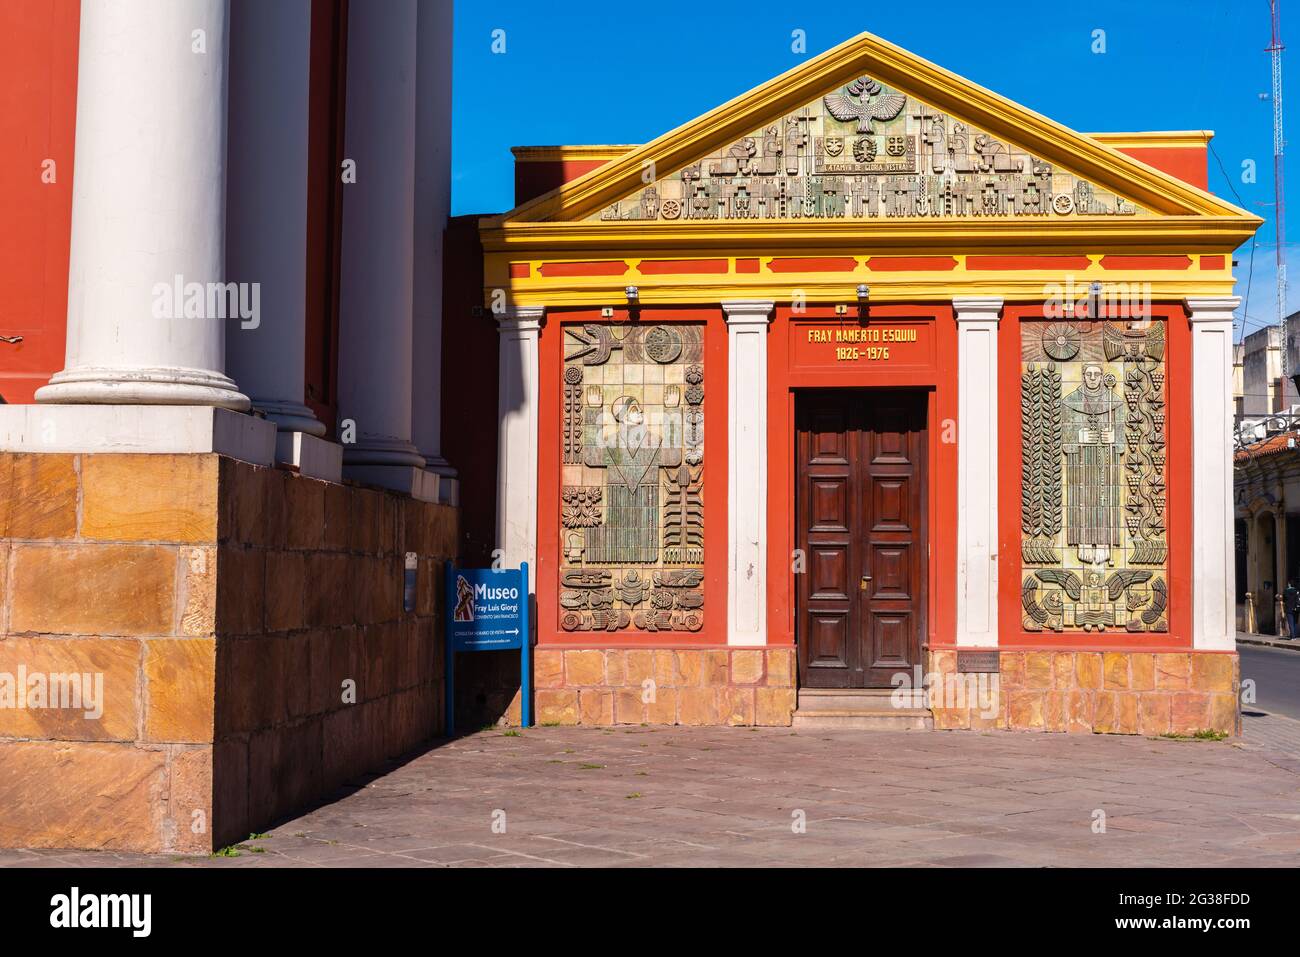 Le Musée néoclassique d'archéologie de haute montagne abrite des objets de la civilisation inca, Salta, province de Salta, NW Argentine, Amérique latine Banque D'Images